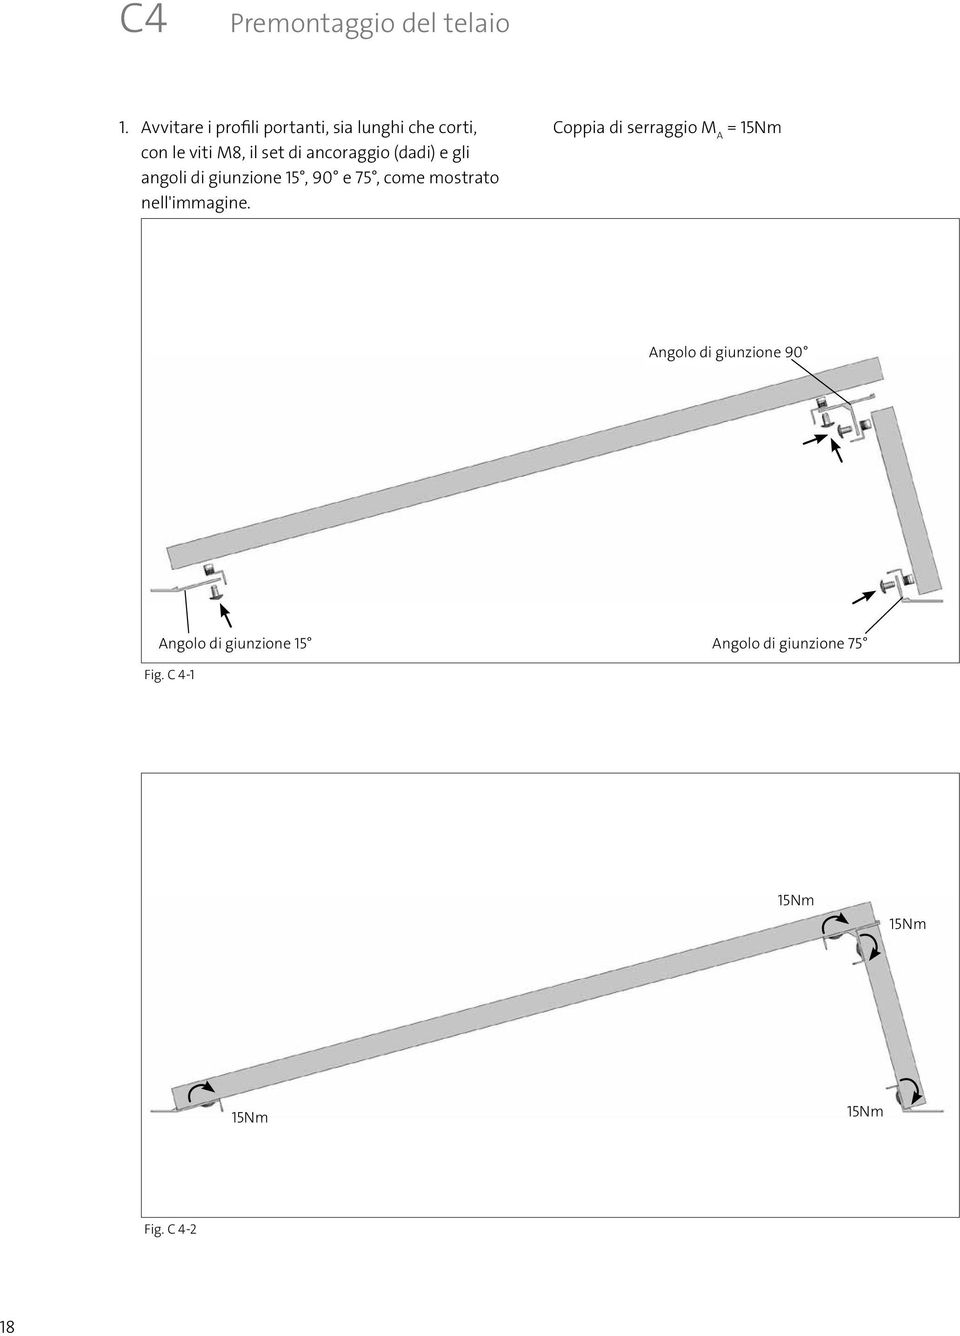 ancoraggio (dadi) e gli angoli di giunzione 15, 90 e 75, come mostrato nell'immagine.